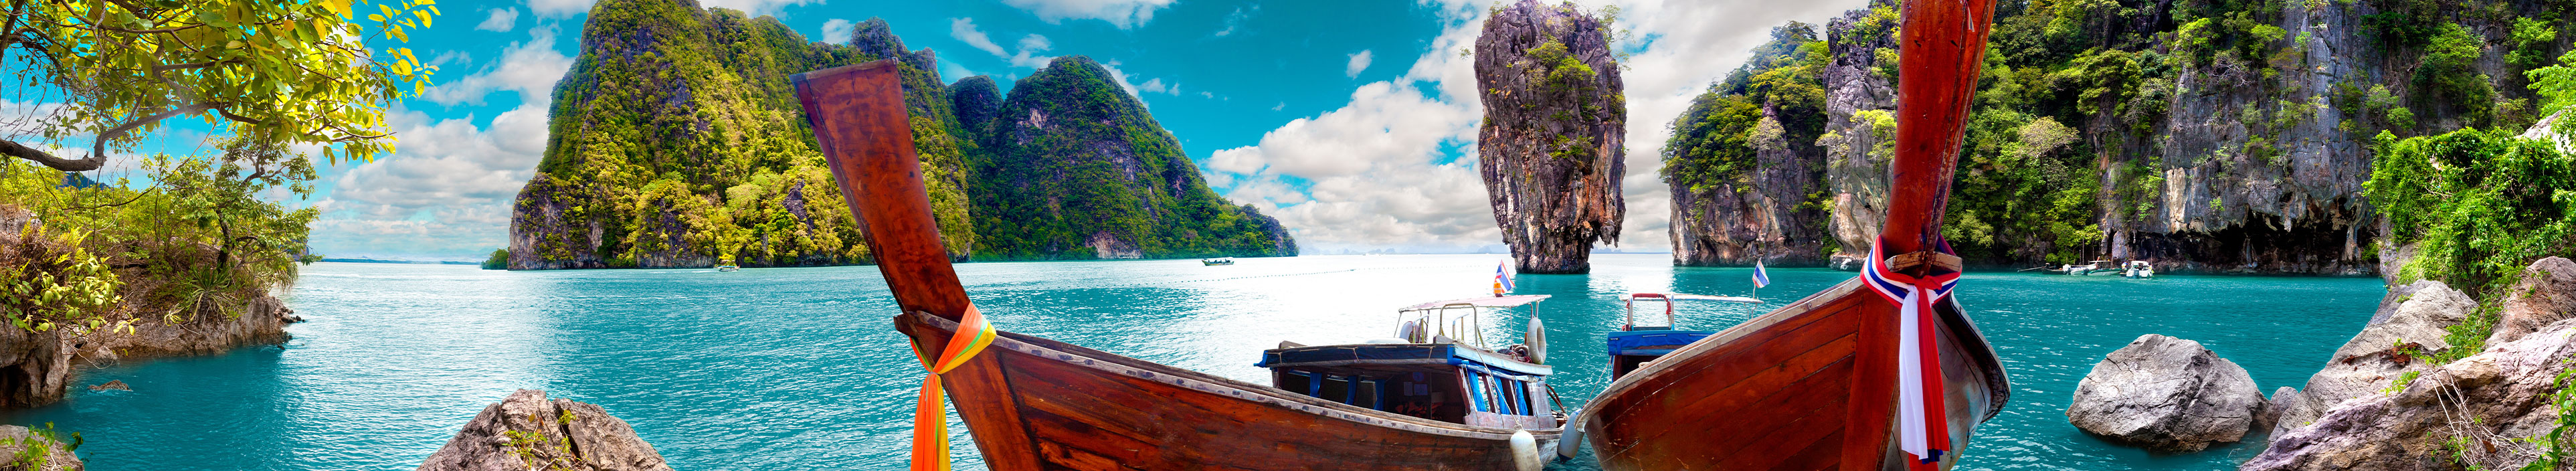 Urlaub Thailand. Zwei rote Holzboote auf türkisblauem Wasser und im Hintergrund Felsen. 